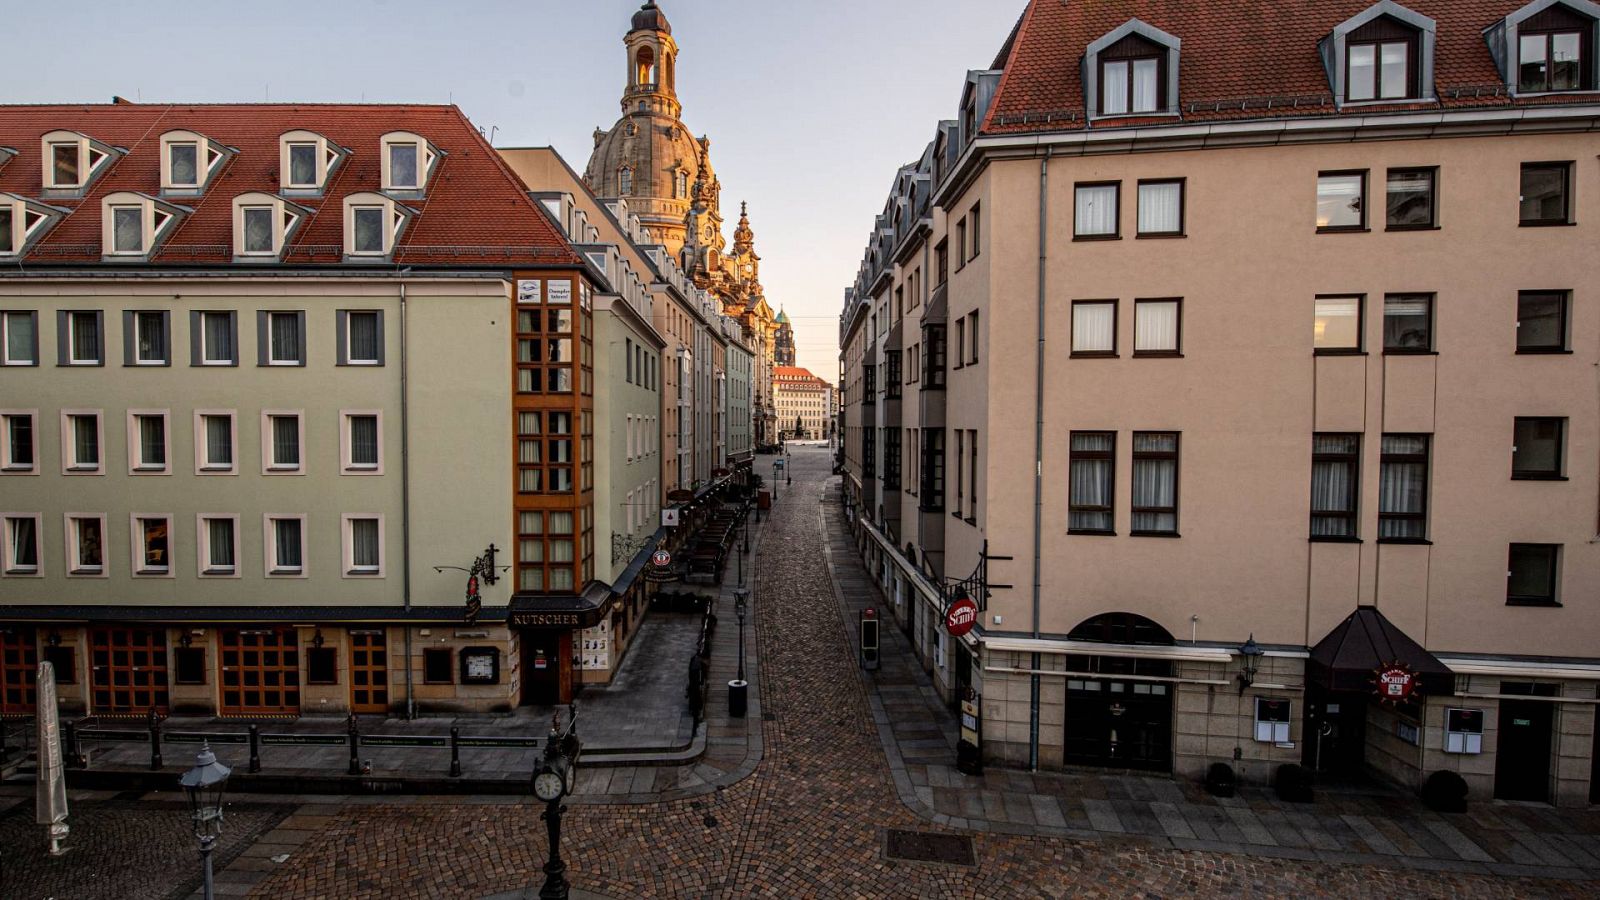 La zona turística de Dresden (Alemania) presenta este aspecto desolador